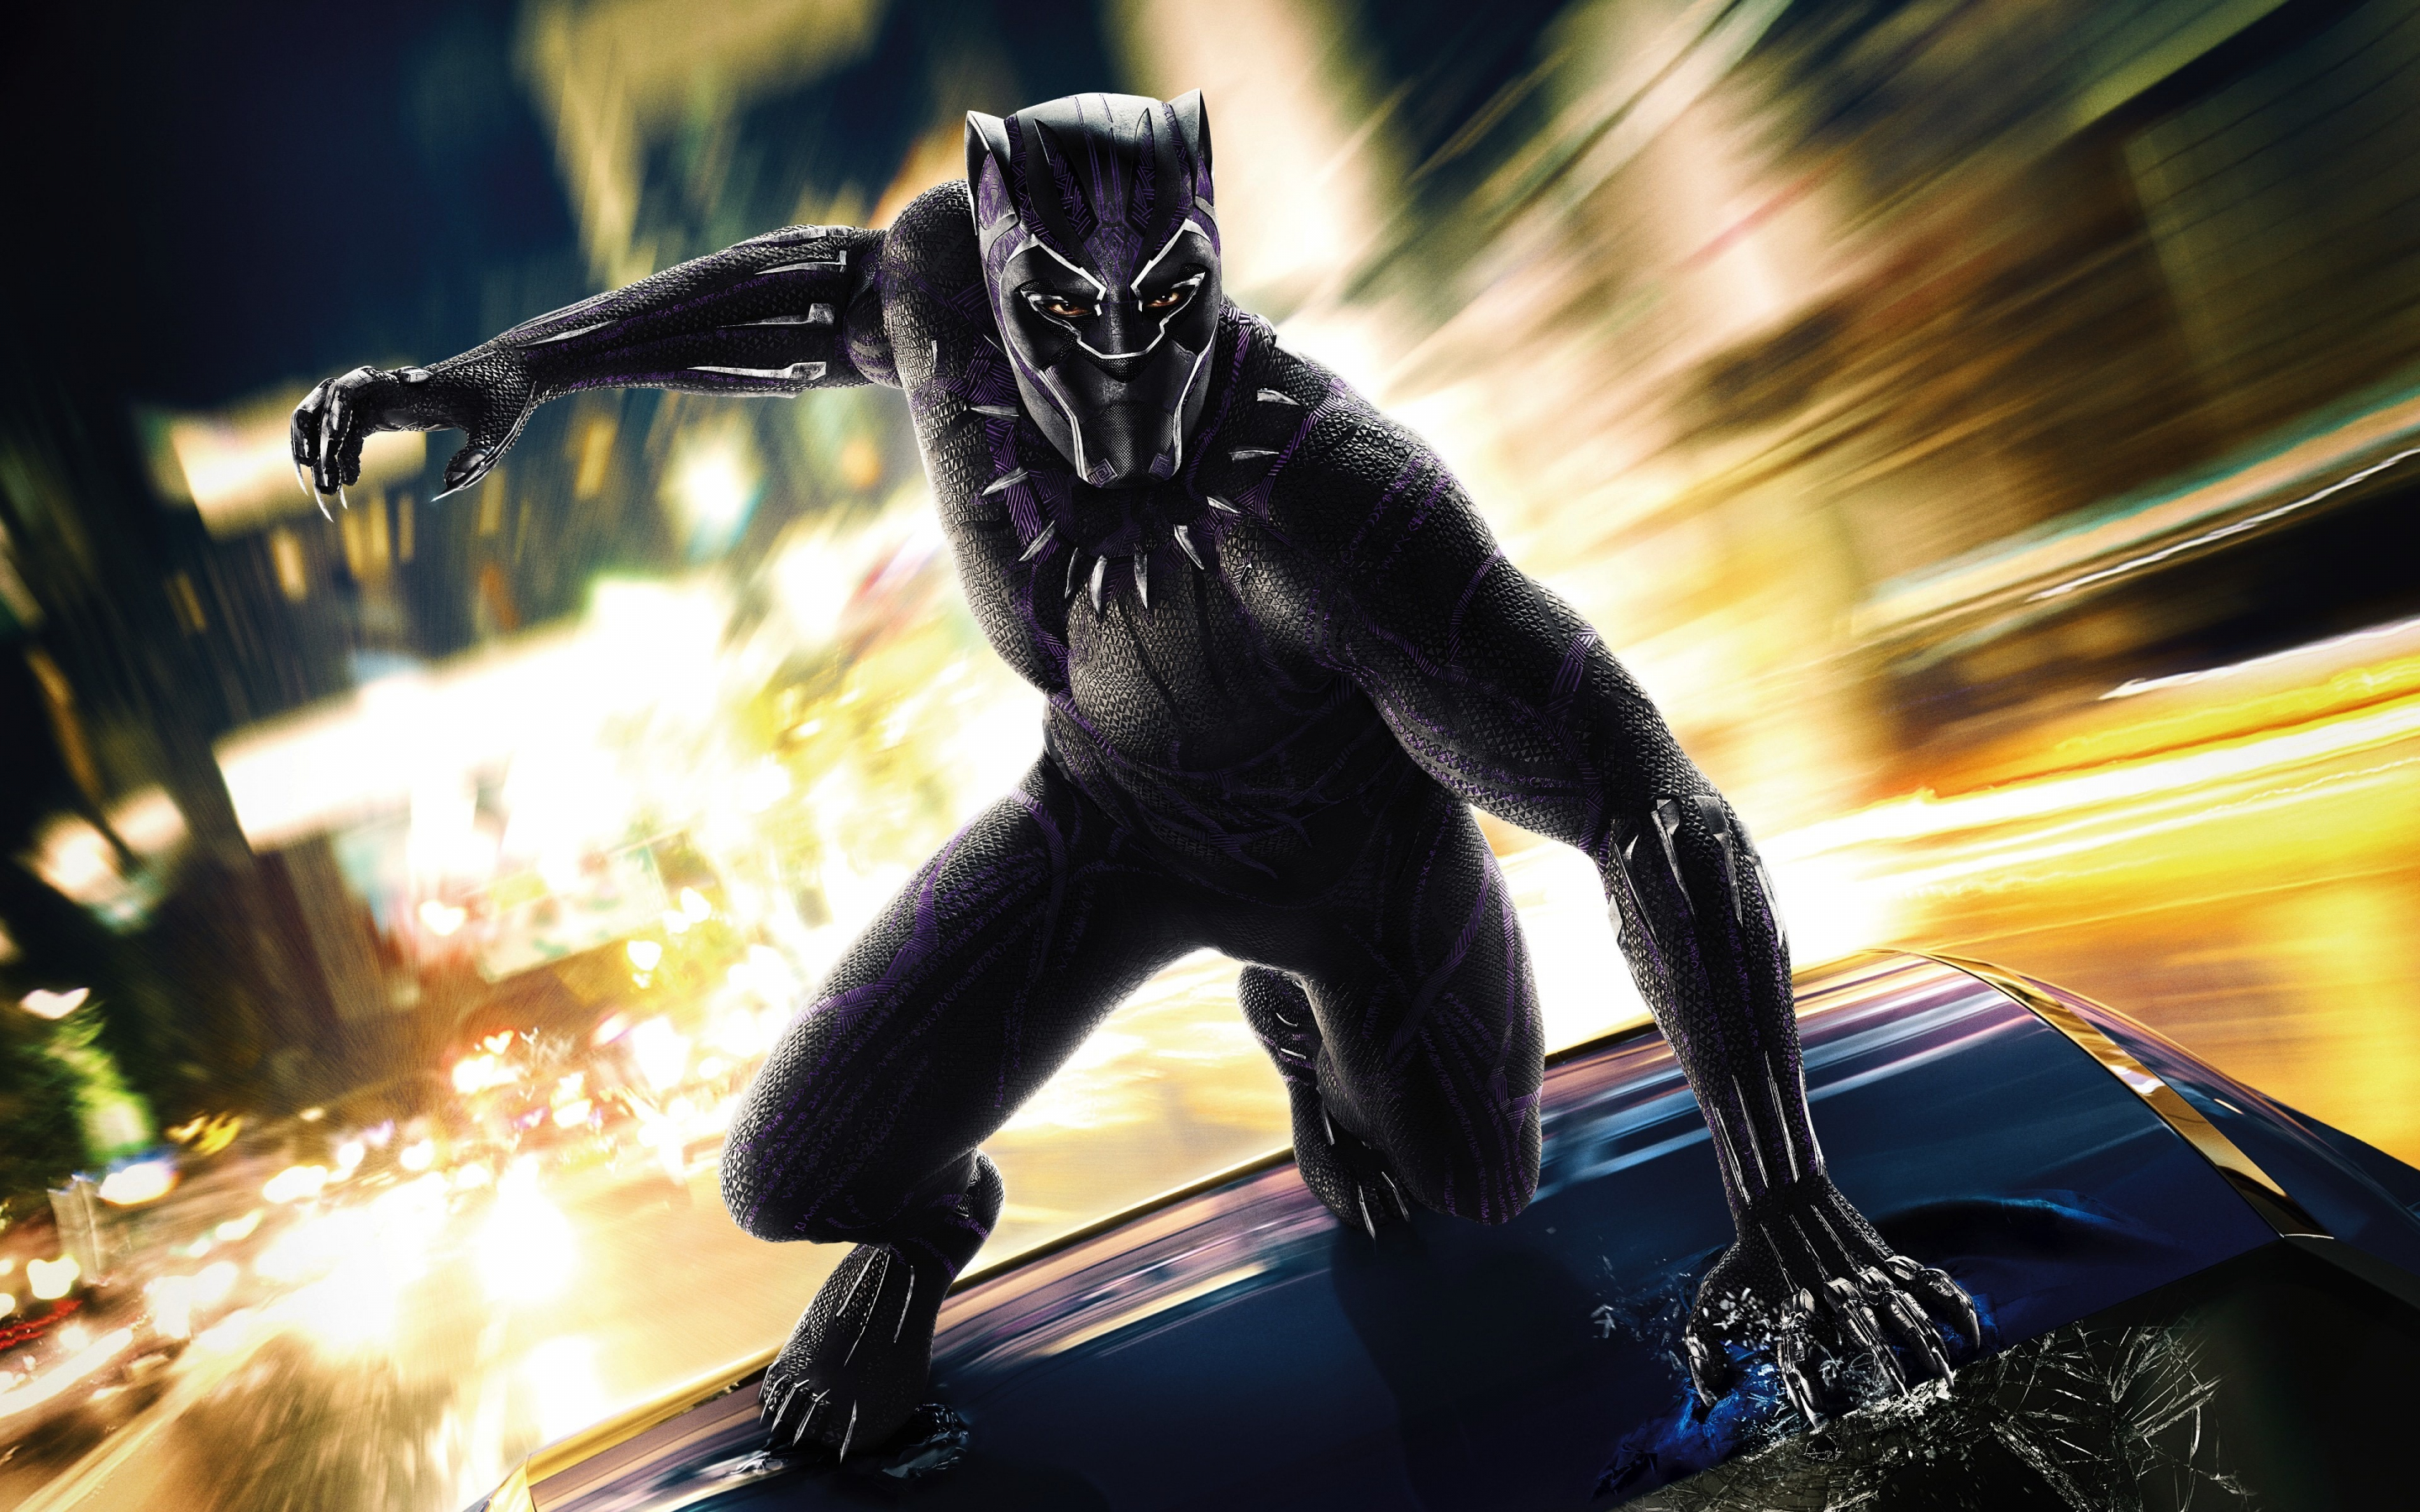 Black panther, 2018 movie, superhero, 2880x1800 wallpaper